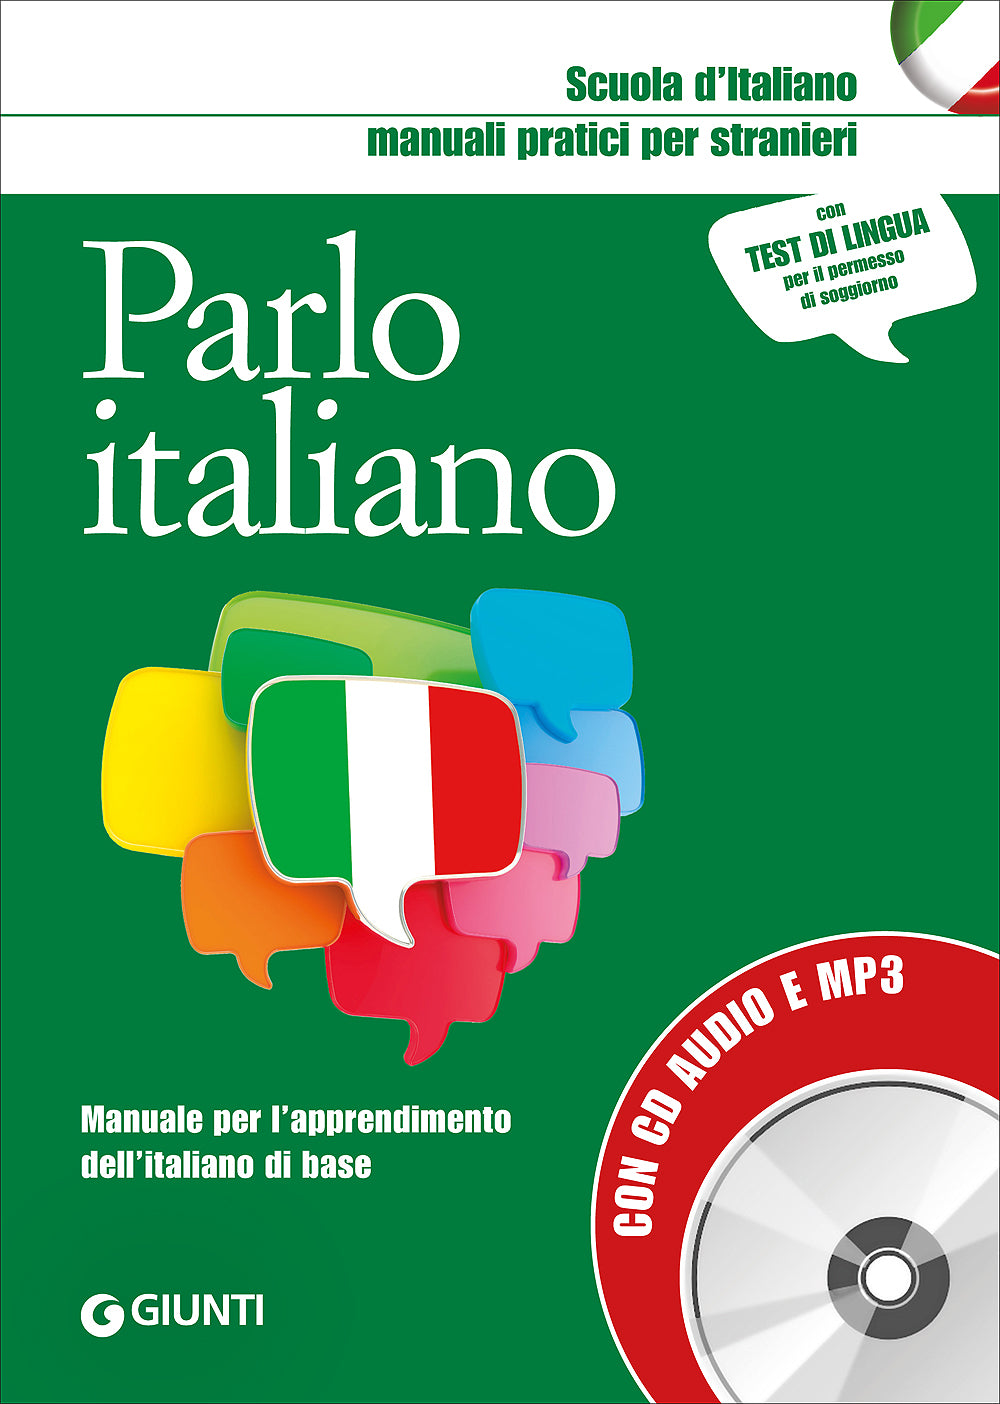 Parlo italiano + CD audio e MP3. Manuale per l'apprendimento dell'italiano di base - Con test di lingua per il permesso di soggiorno